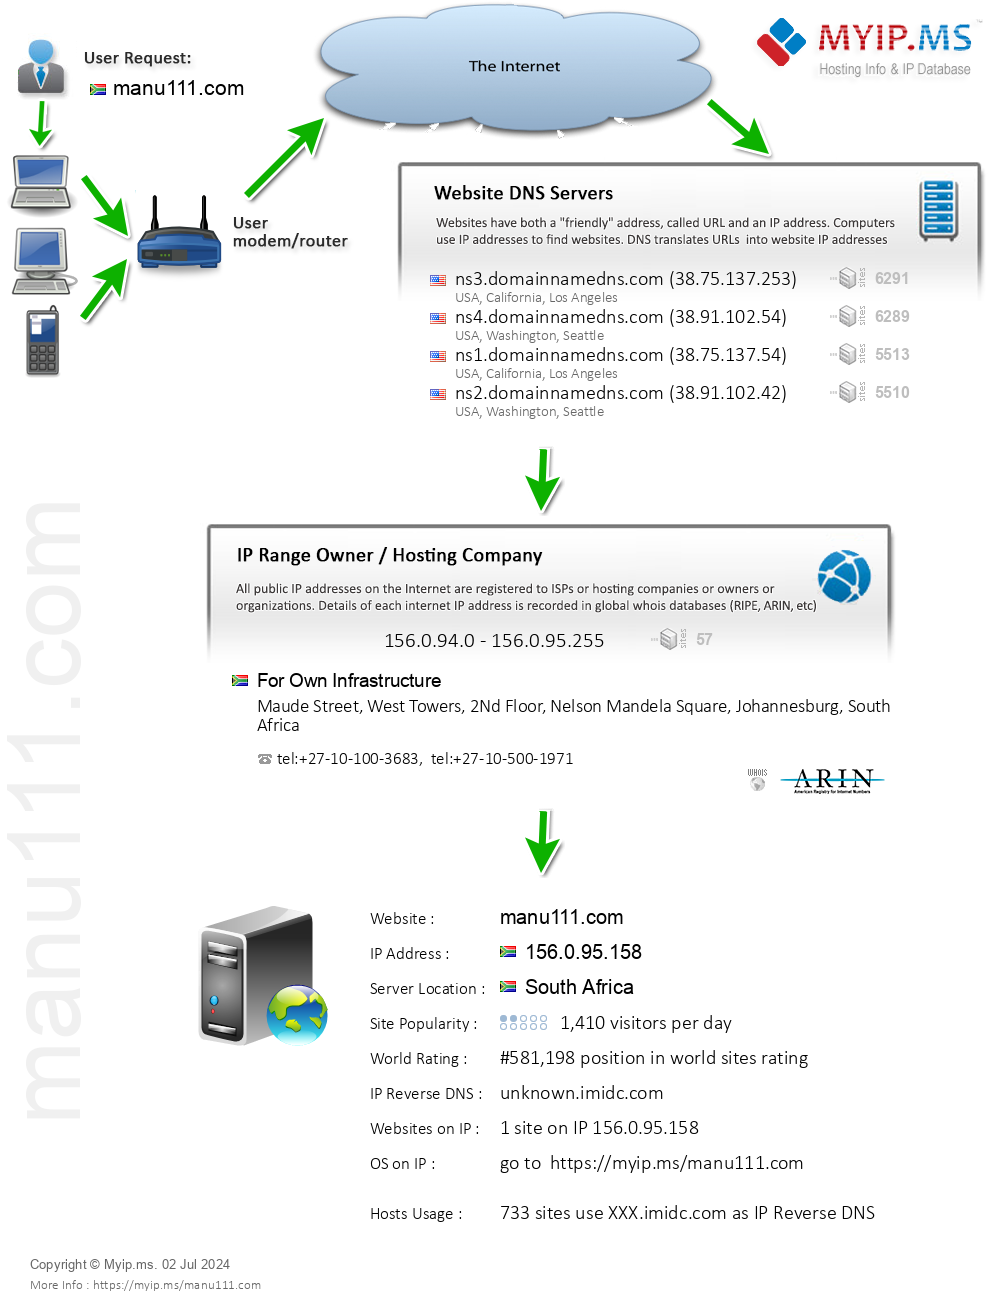 Manu111.com - Website Hosting Visual IP Diagram